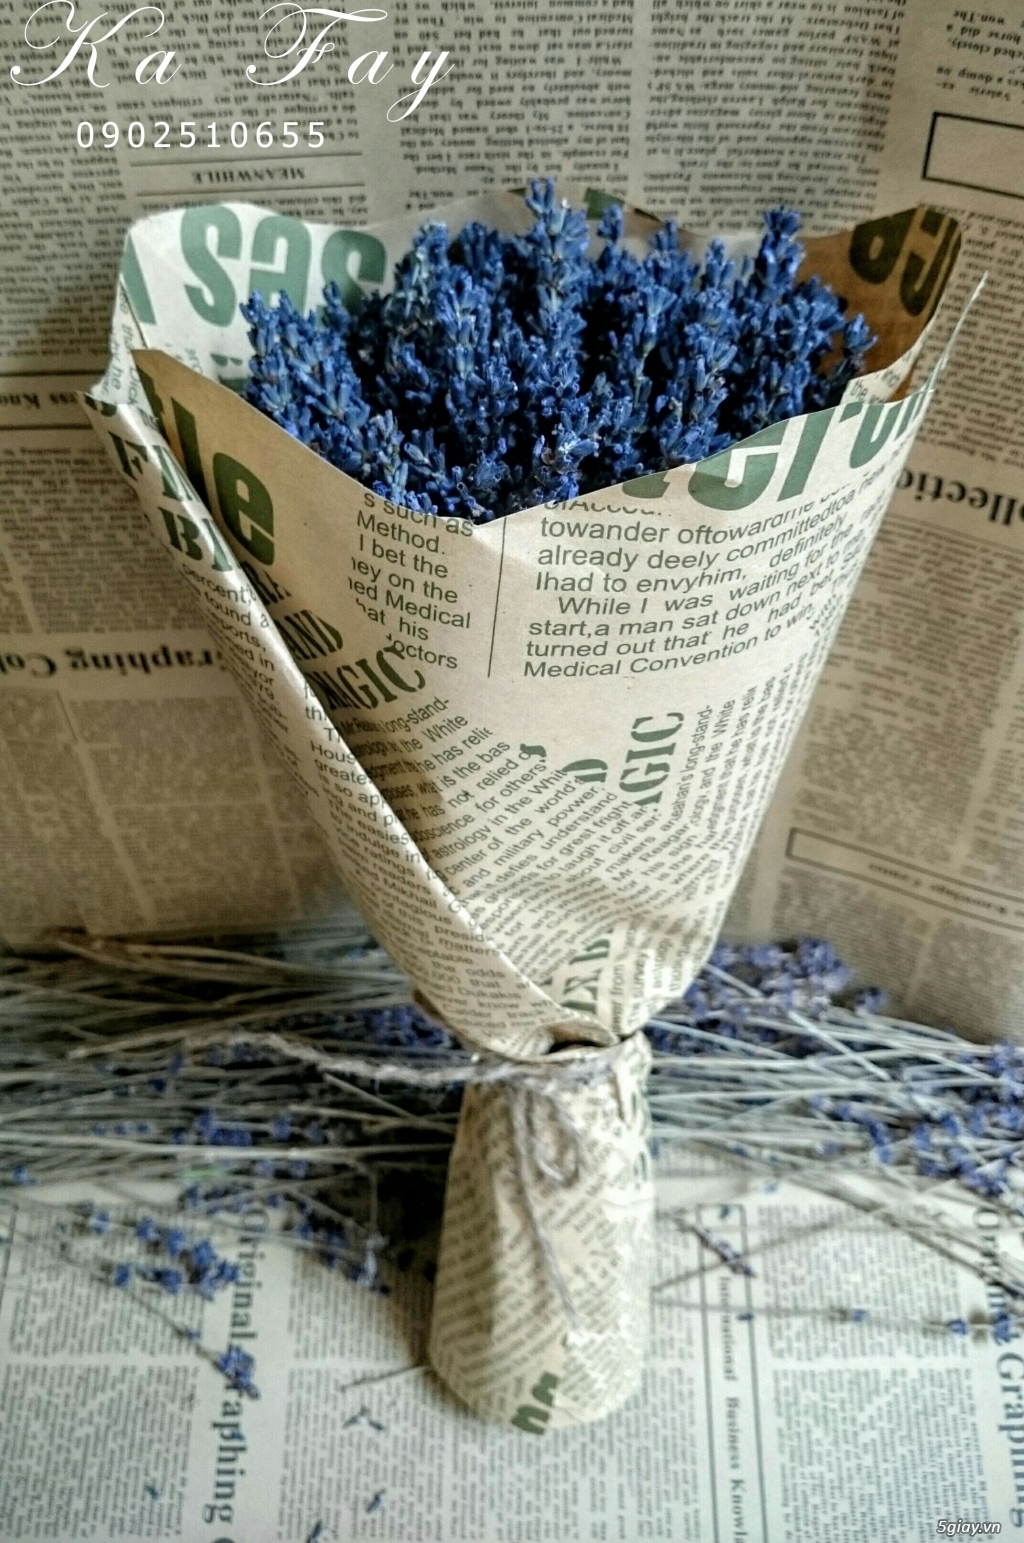 Hoa khô Lavender nhập khẩu từ pháp vs phụ kiện handmade - 16